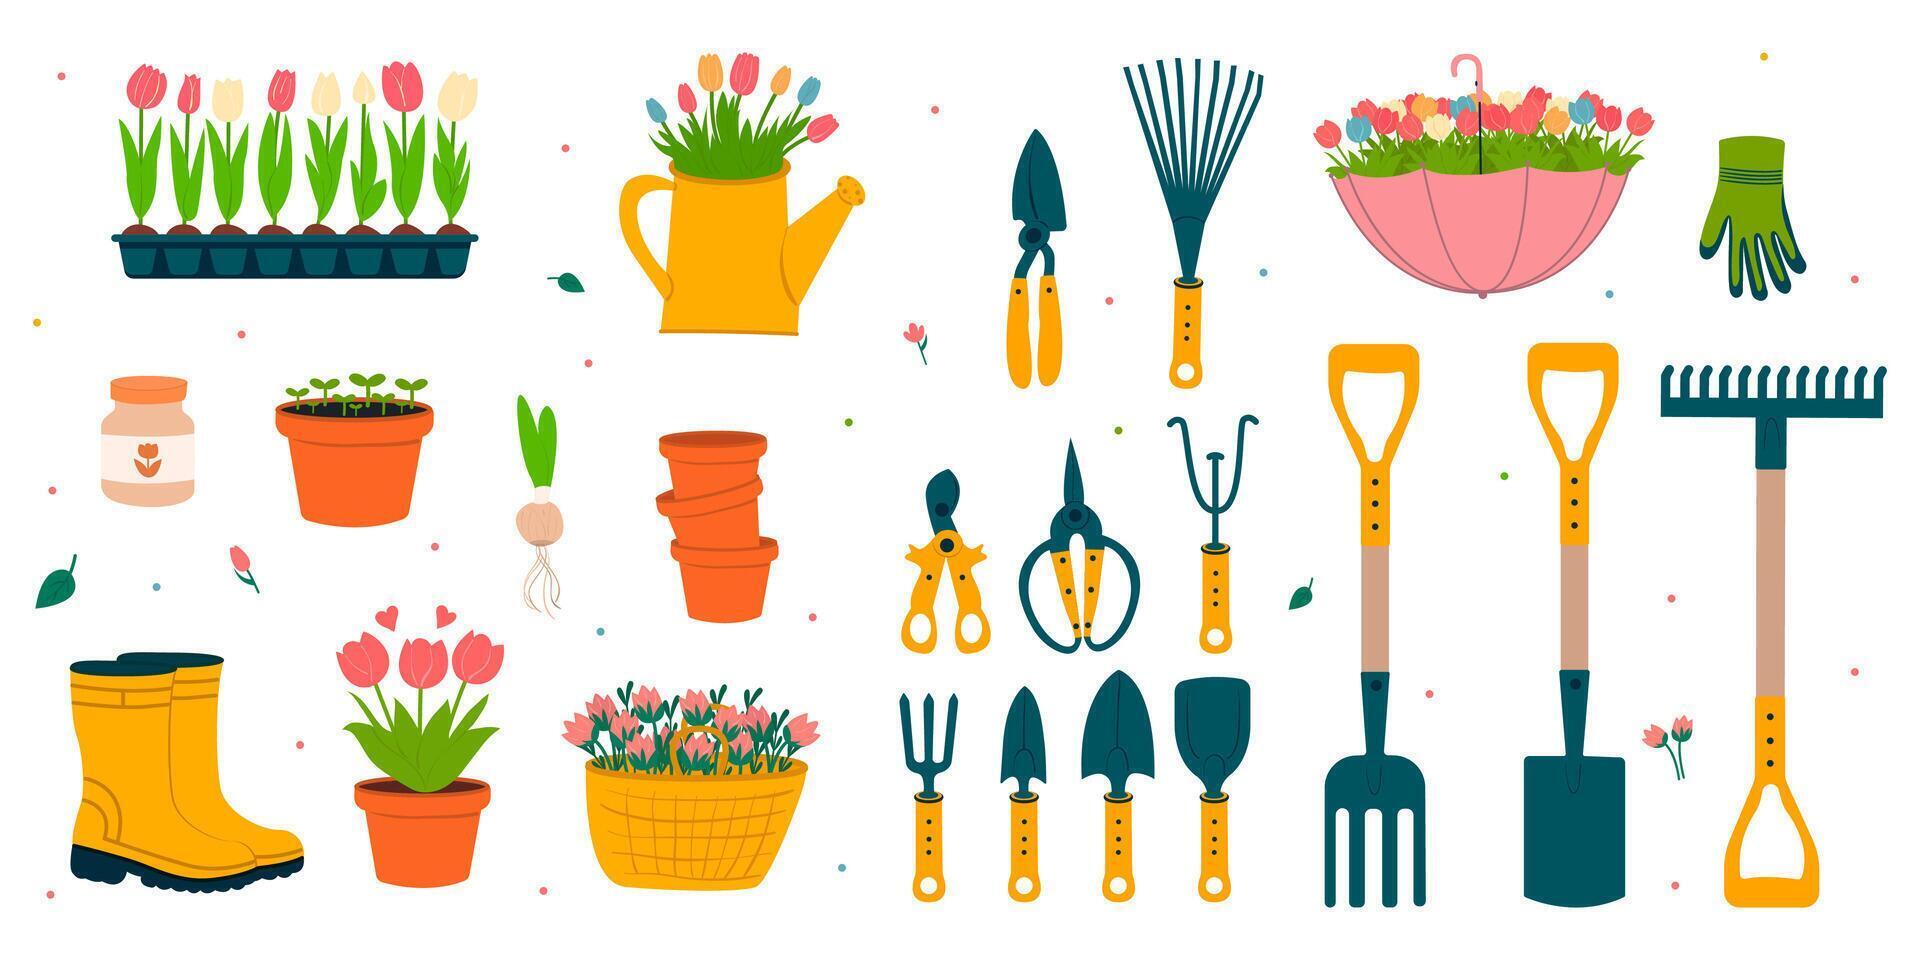 ensemble de jardinage outils.jardinage outils.caoutchouc bottes, semis, râteau, jardin couteau, gants, arrosage peut, panier de tulipes.printemps vecteur dessin